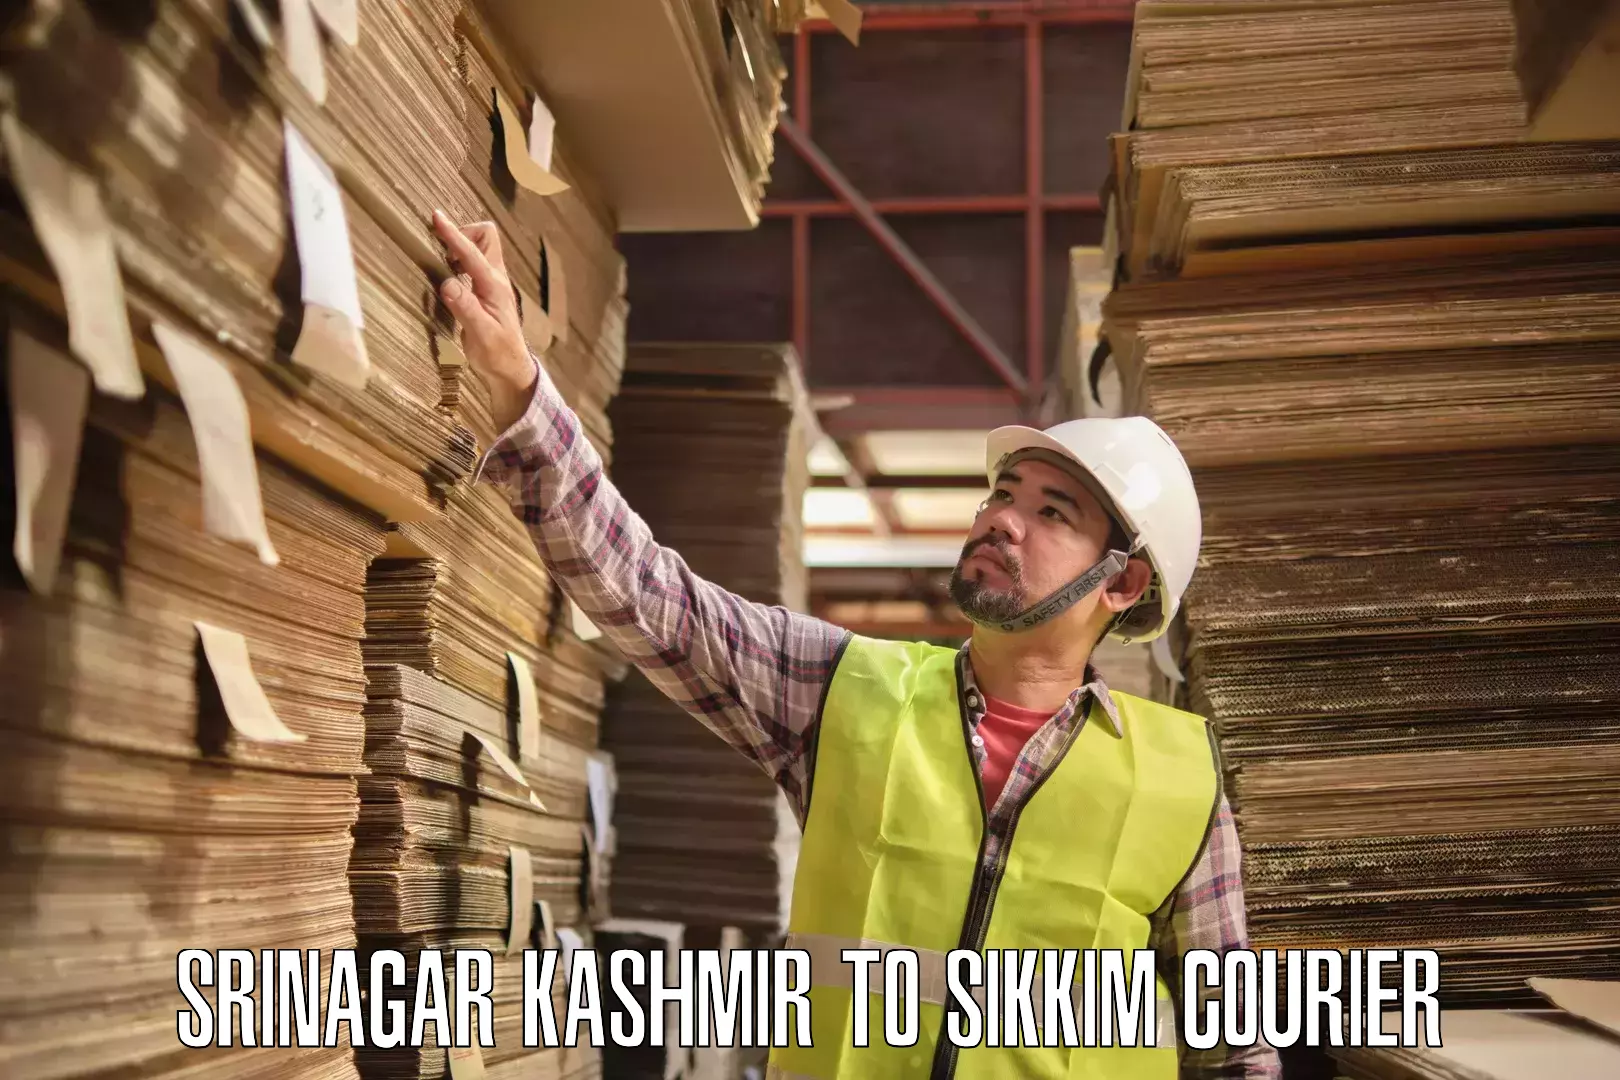 Courier service comparison Srinagar Kashmir to Pelling